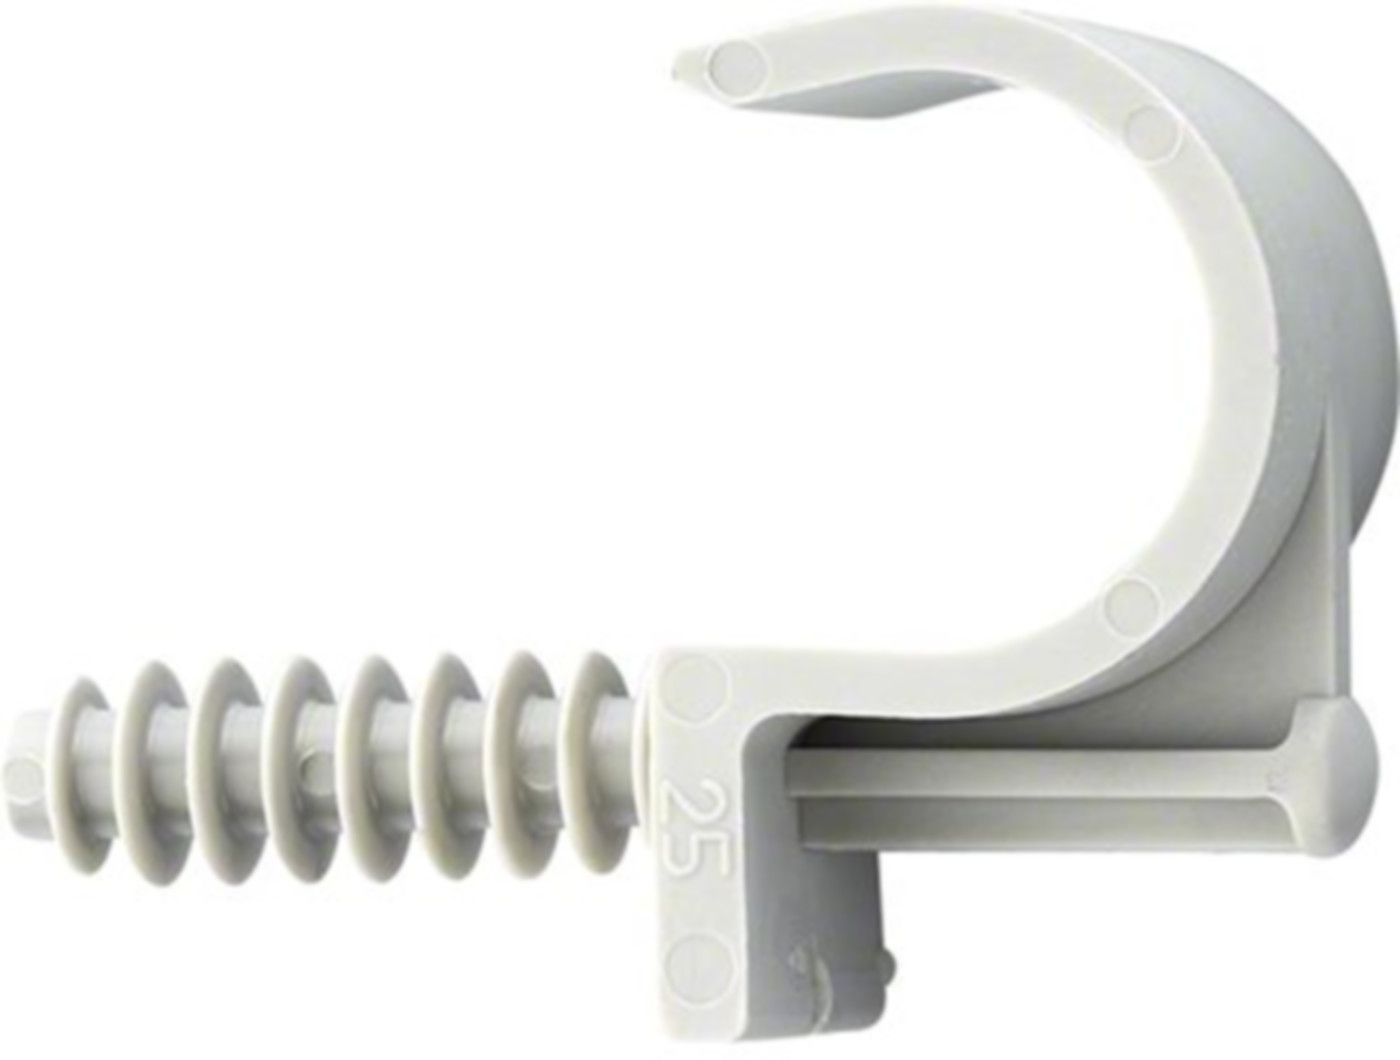 Kunststoff-Briden grau einfach FIX-RING 25mm A 94.155 - Rohrschellen/Briden aus Kunststoff